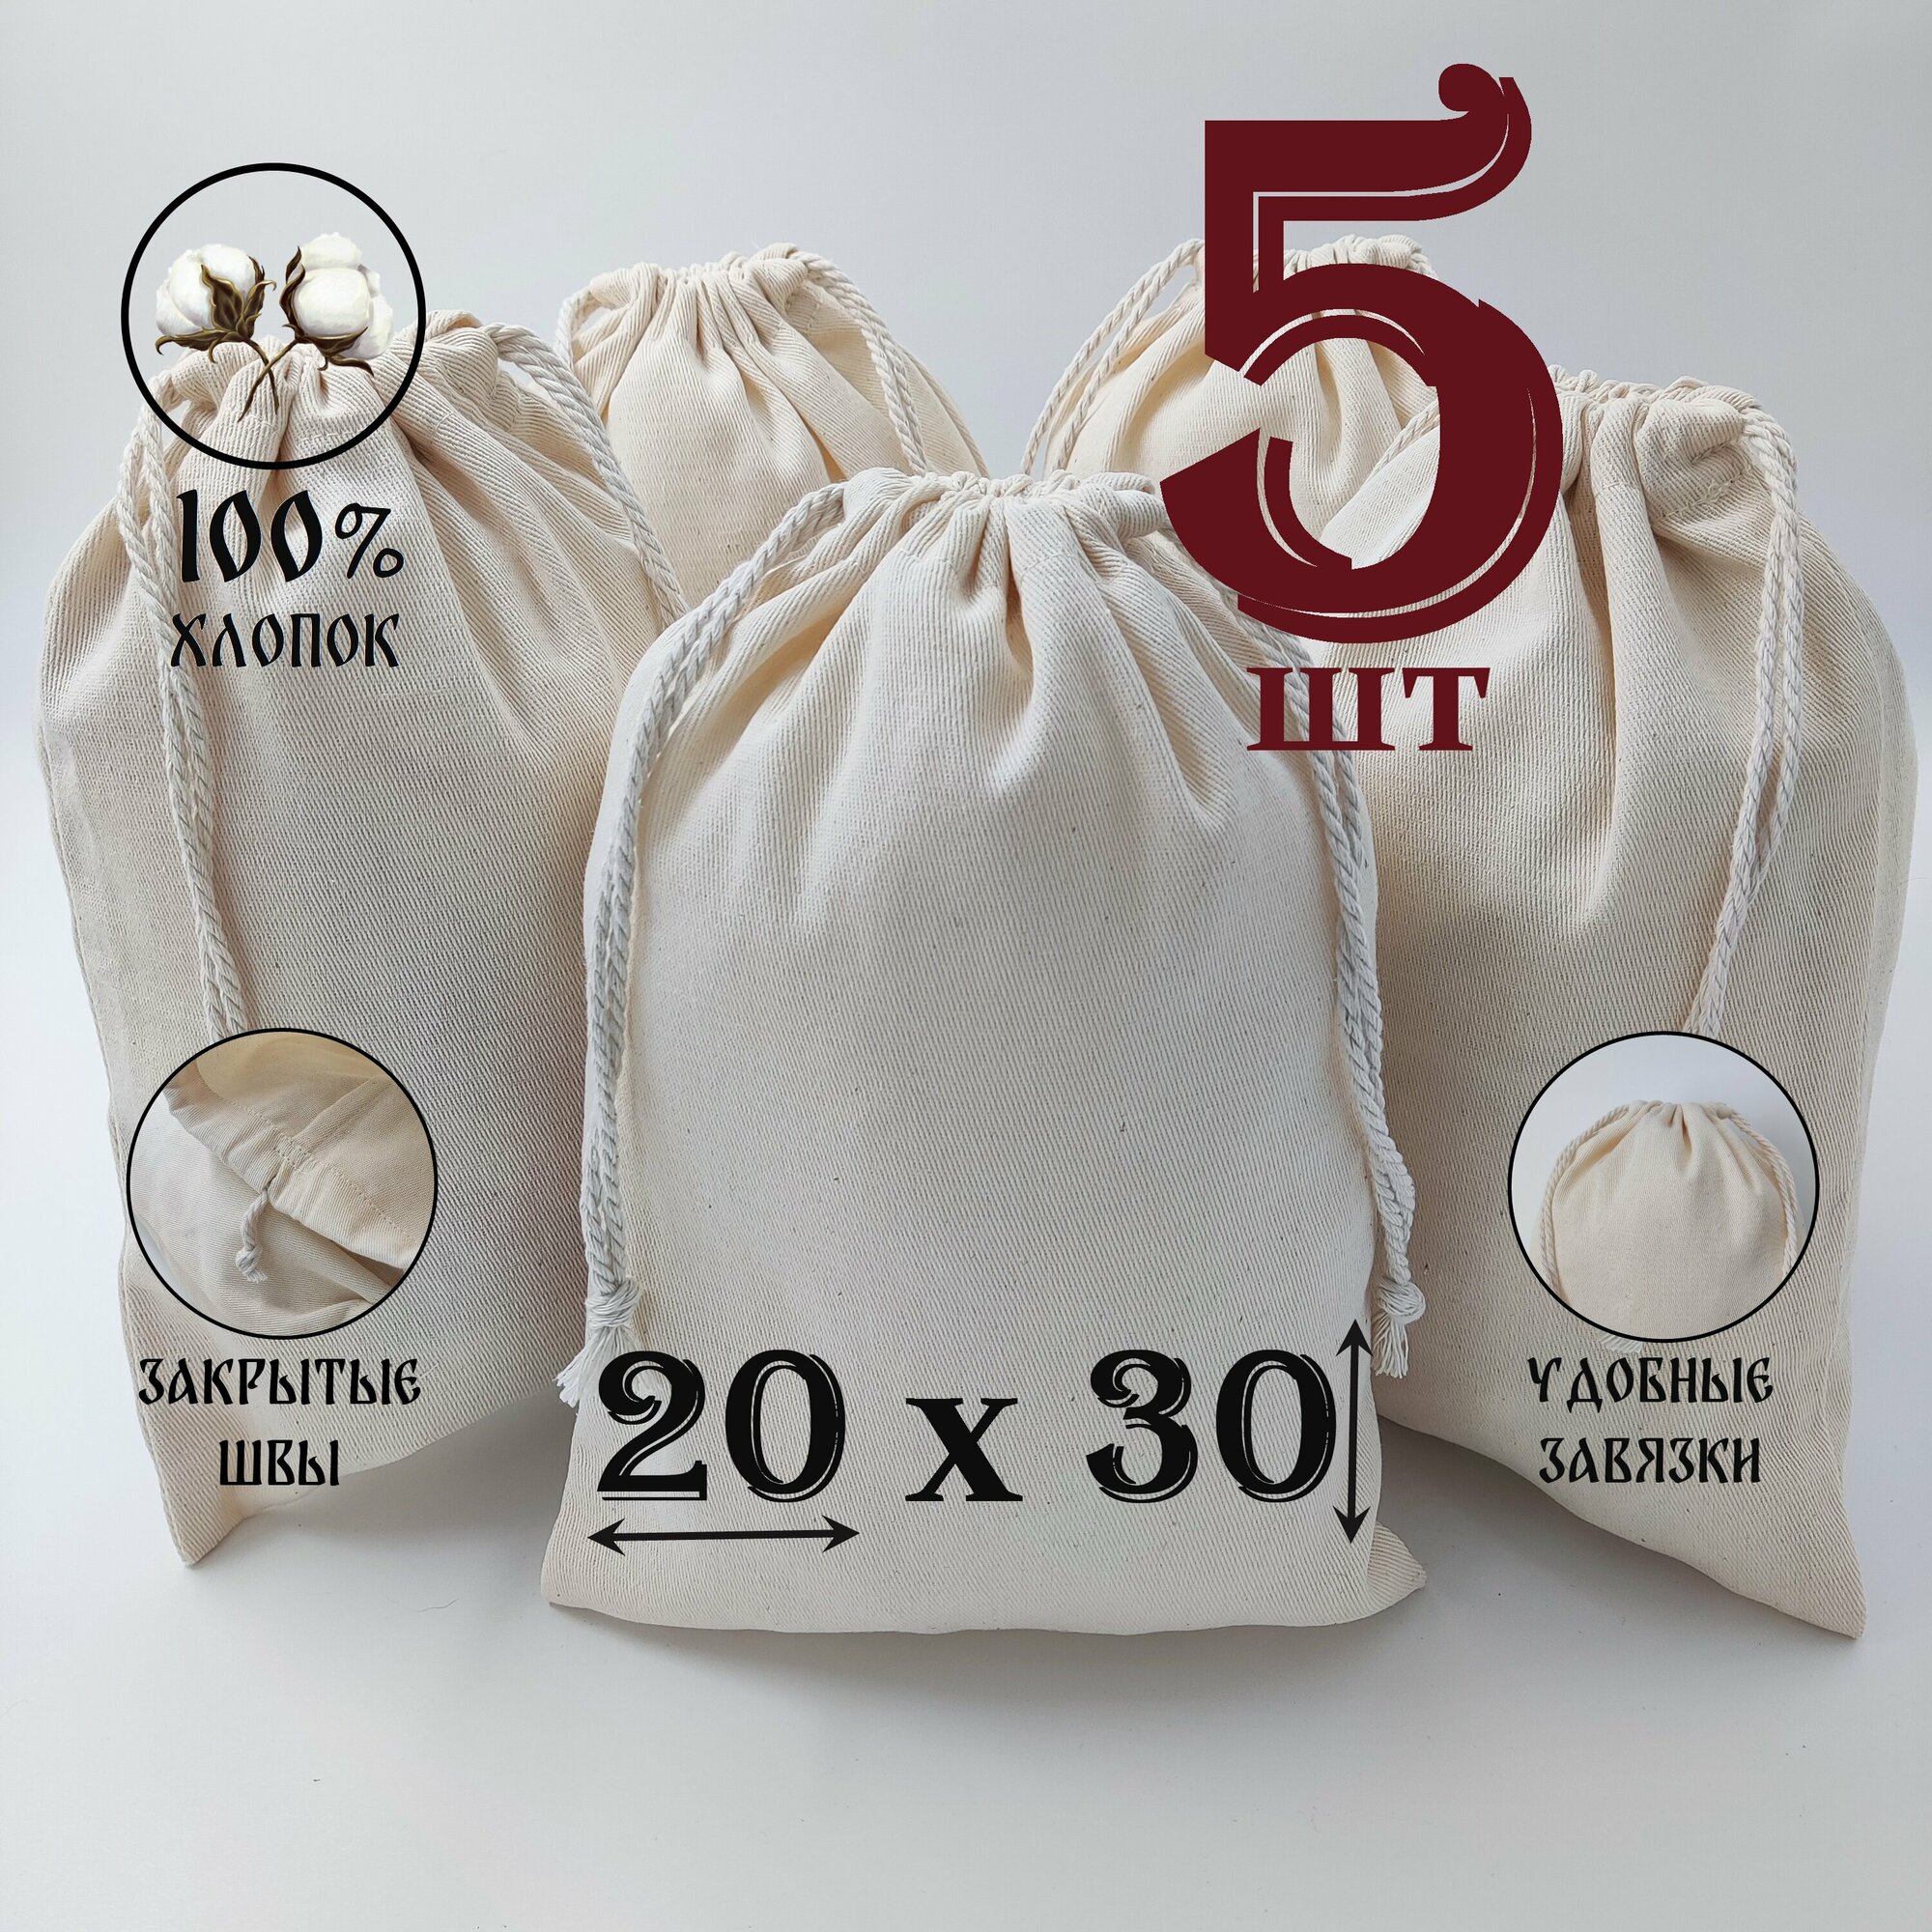 Хлопковый мешочек с хлопковыми завязками 20 на 30 см./ 5 шт./ упаковка для подарков и хранения